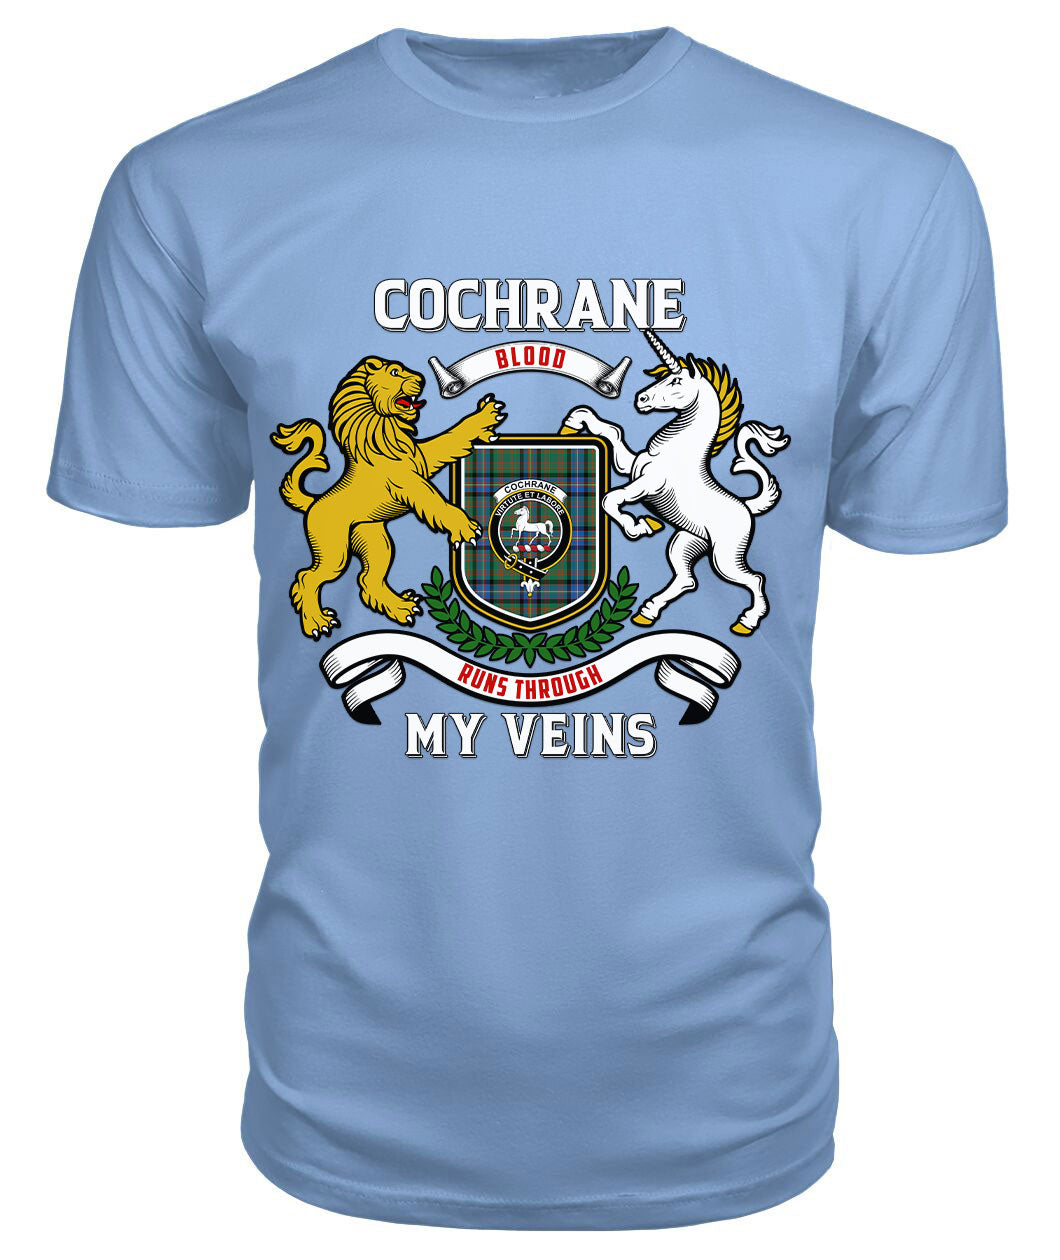 Cochrane Ancient Tartan Crest 2D T-shirt - Blood Runs Through My Veins Style